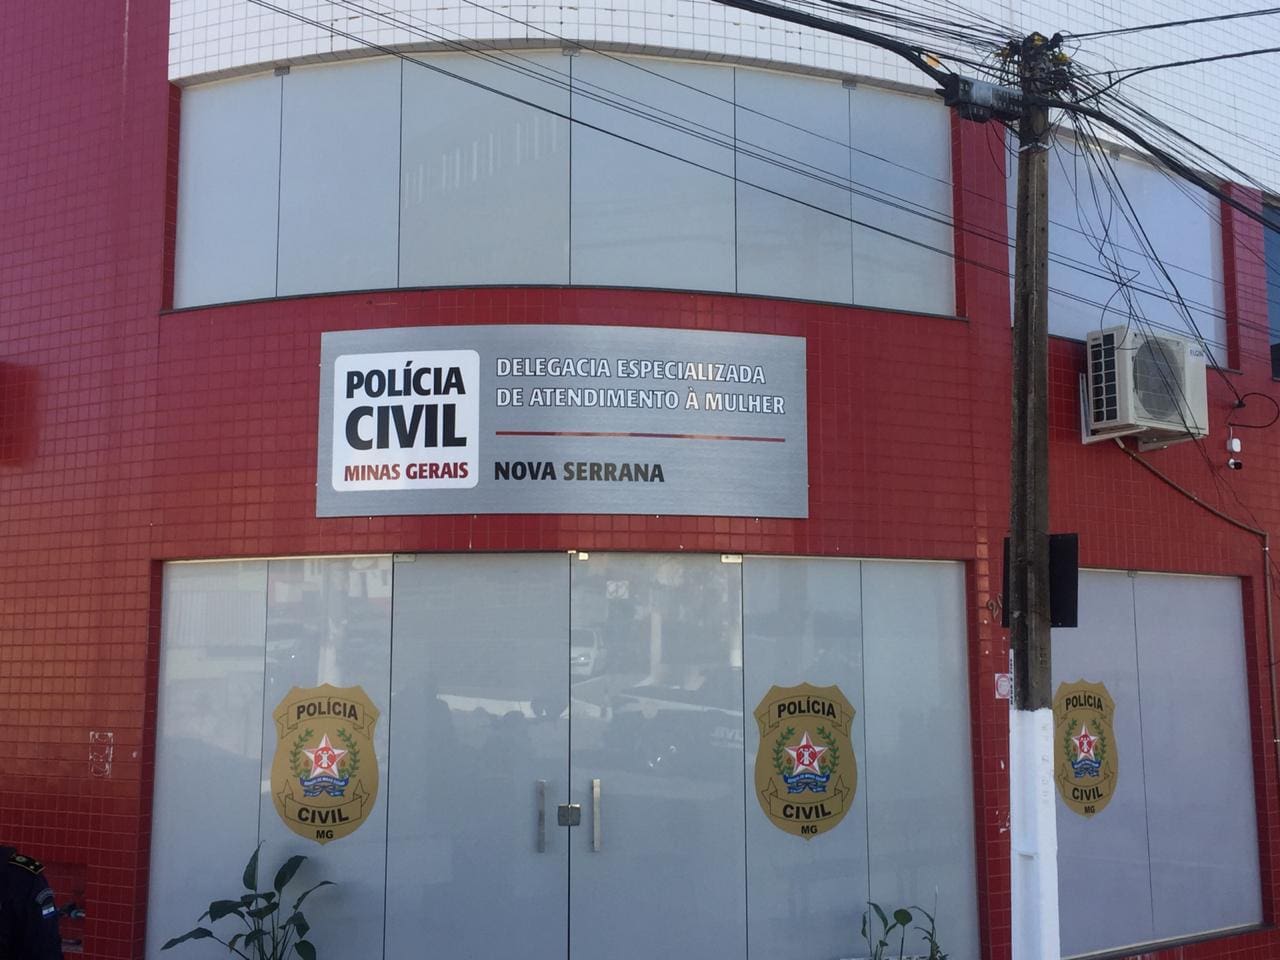 Padrasto suspeito de estupro de vulnerável é preso em Nova Serrana